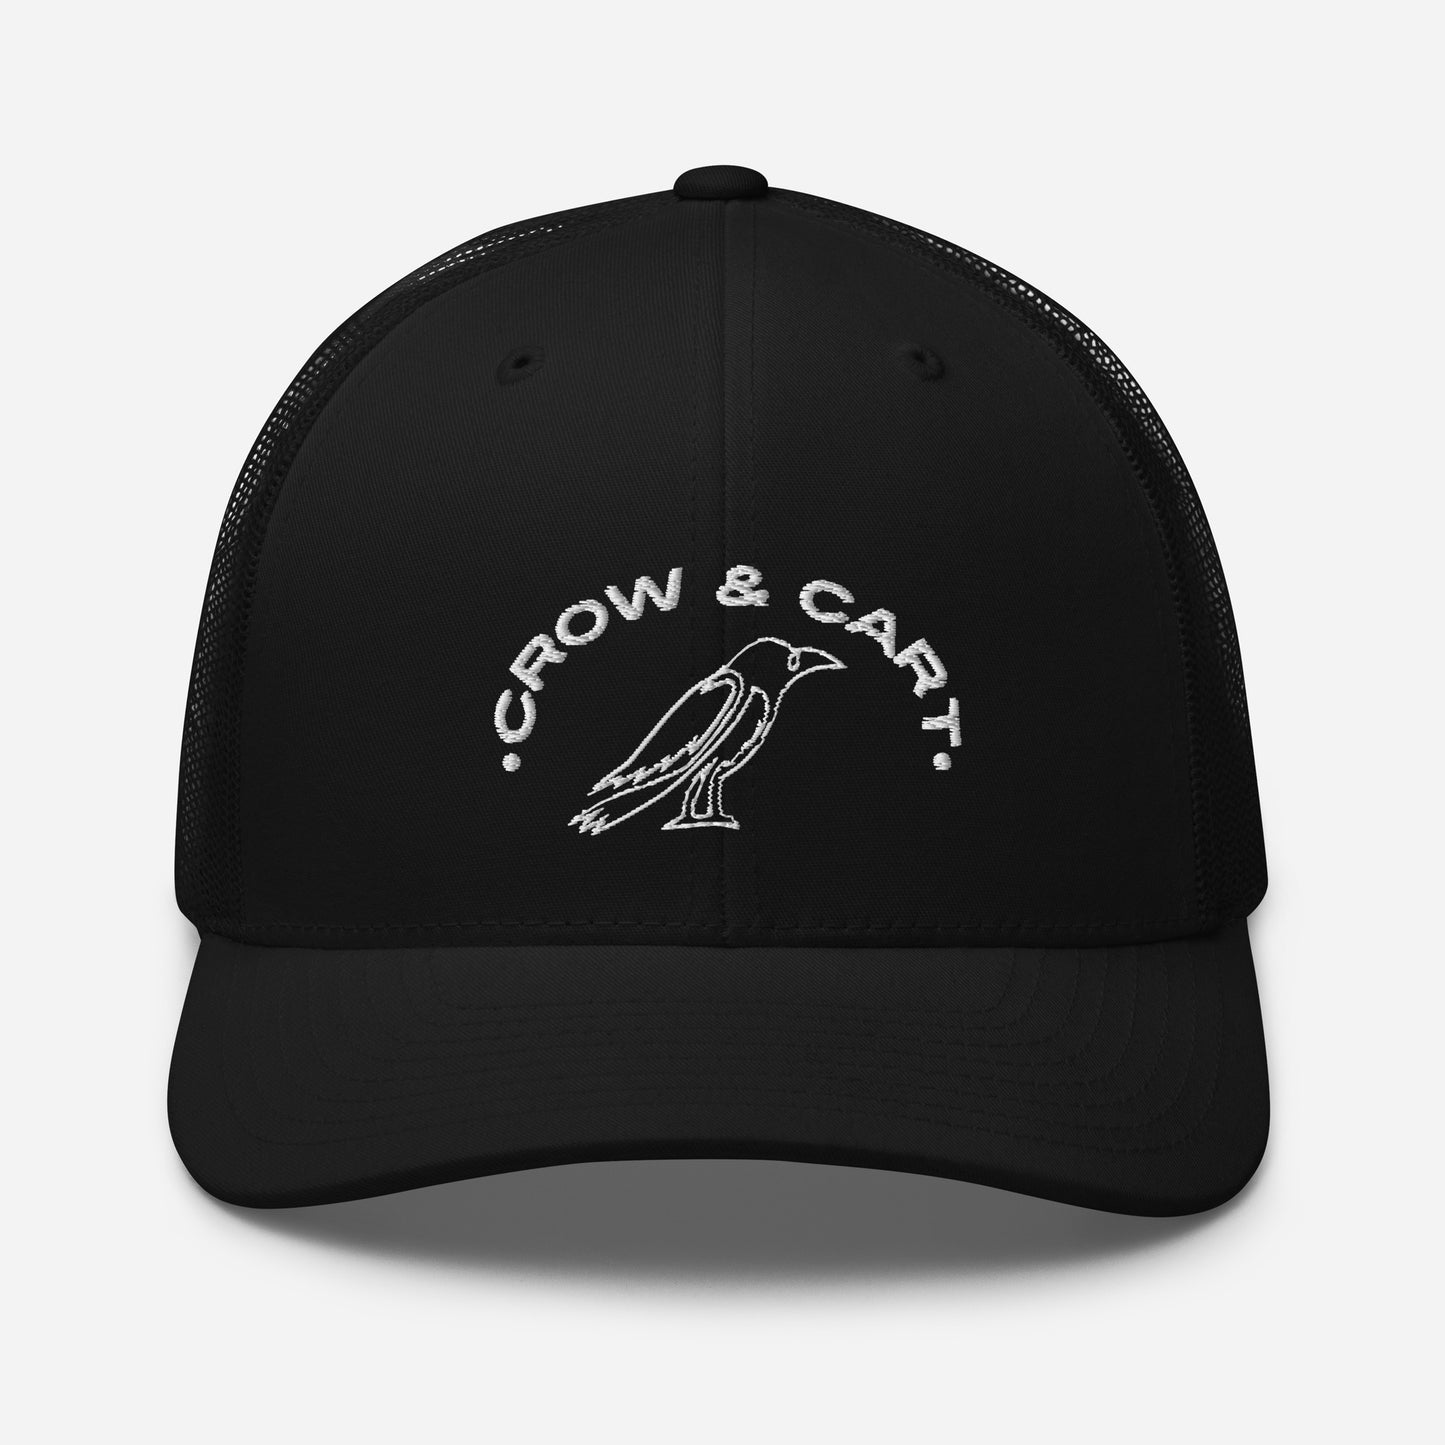 Crow & Cart Trucker Hat. White Stitching.